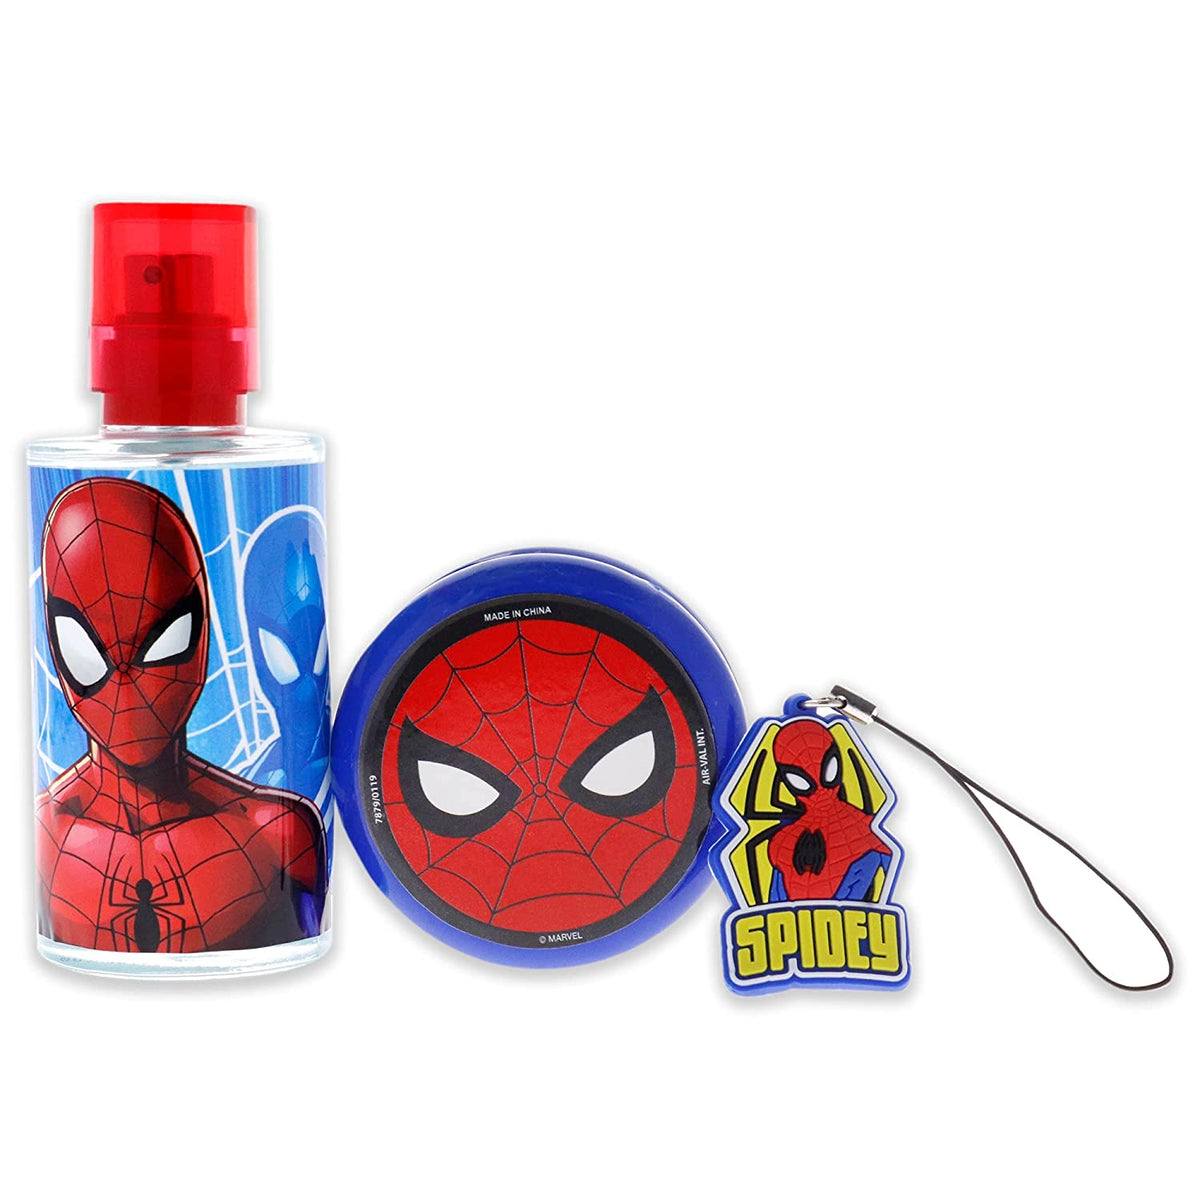 Spiderman Edt 50Ml + Key Ring + Yoyo